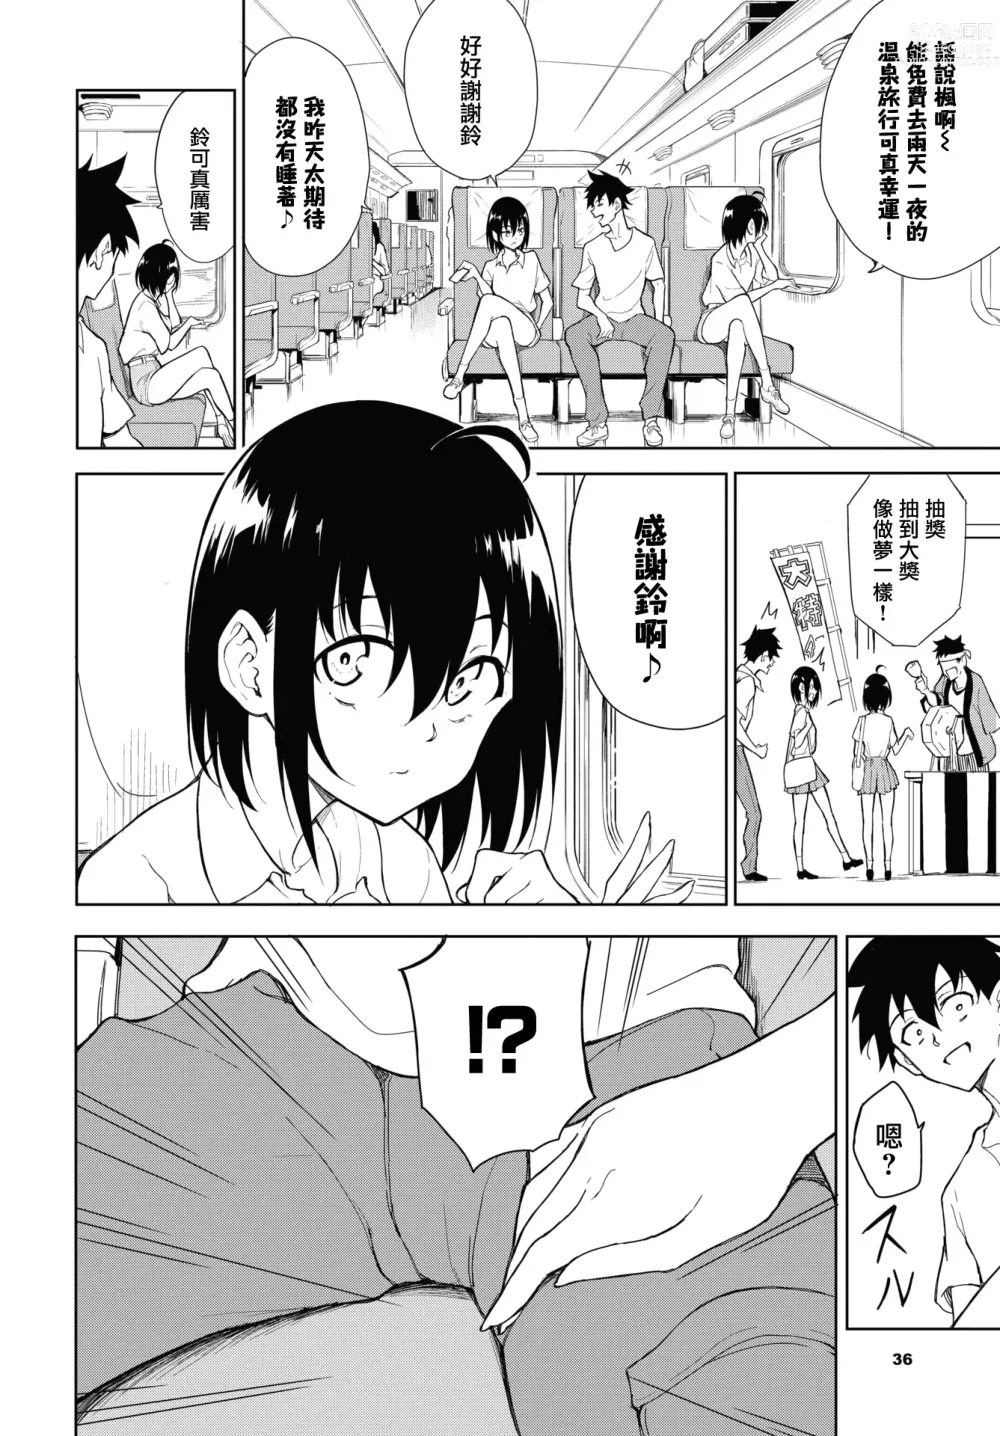 Page 6 of manga Kaede to Suzu 7